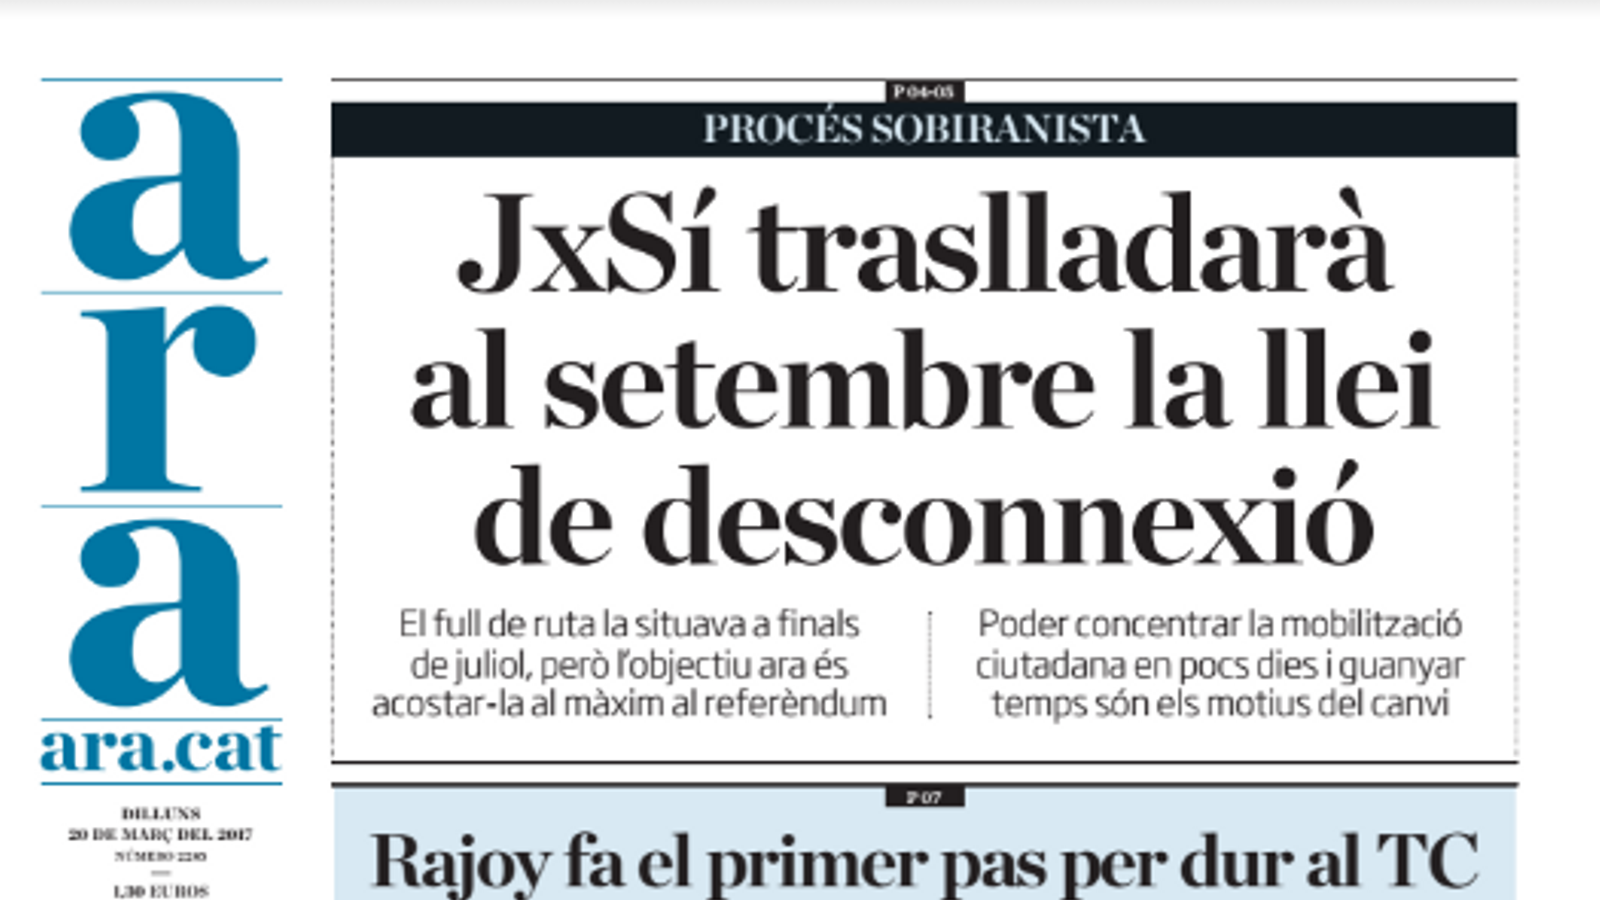 "JxSí traslladarà al setembre la llei de desconnexió", portada de l'ARA d'aquest dilluns